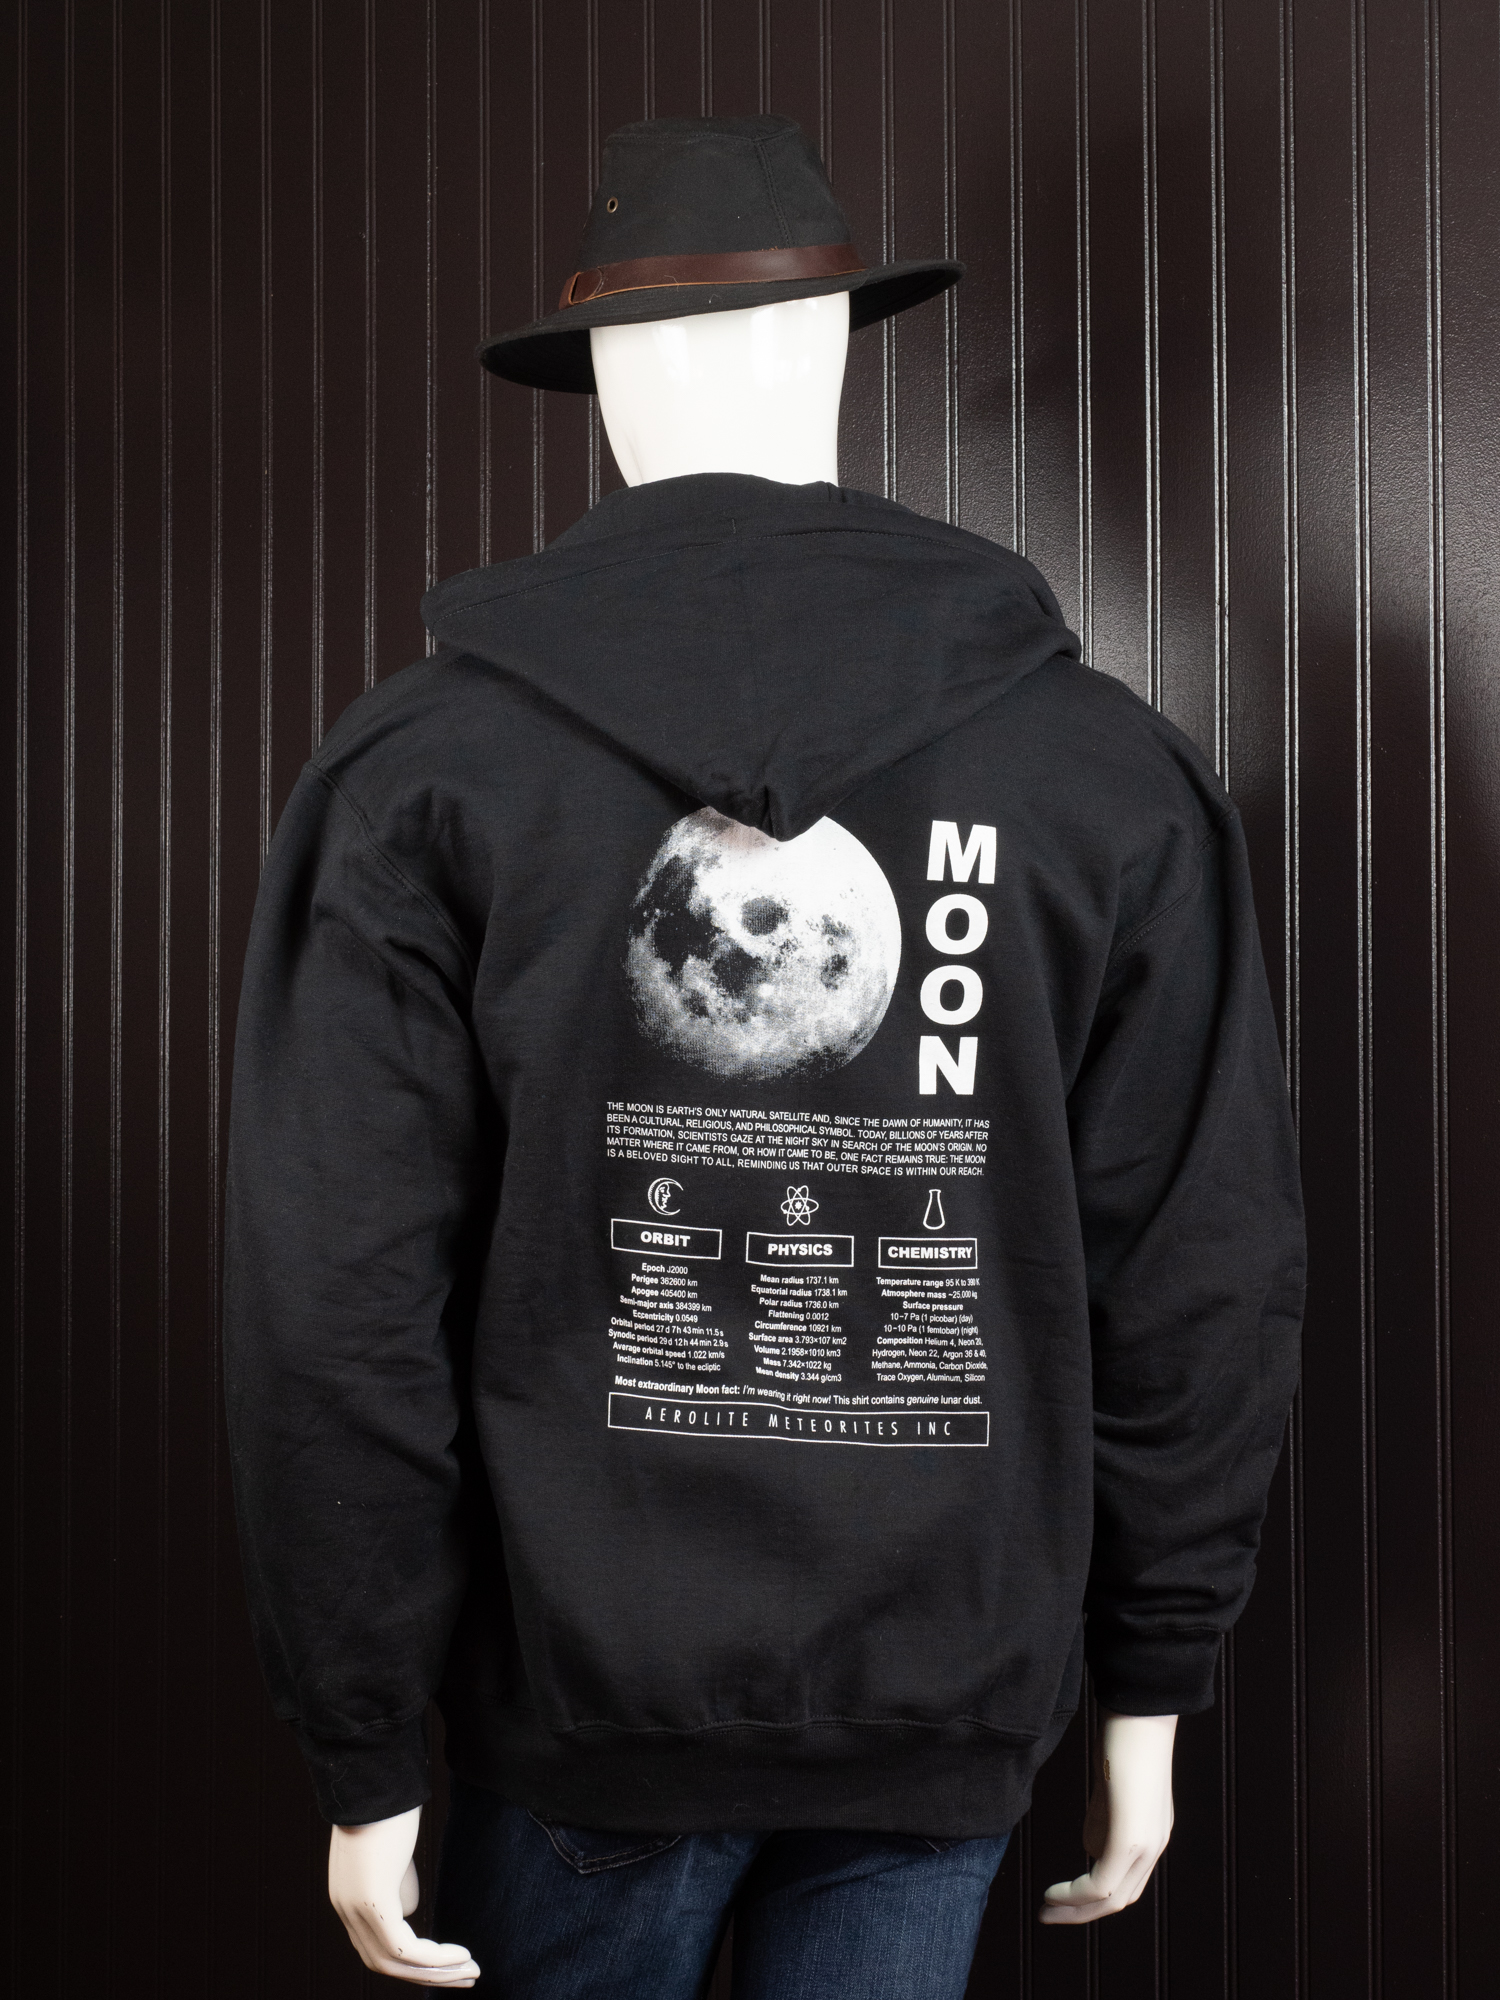 Moon Hoodie: Contains Genuine Moon Dust! – Aerolite Meteorites